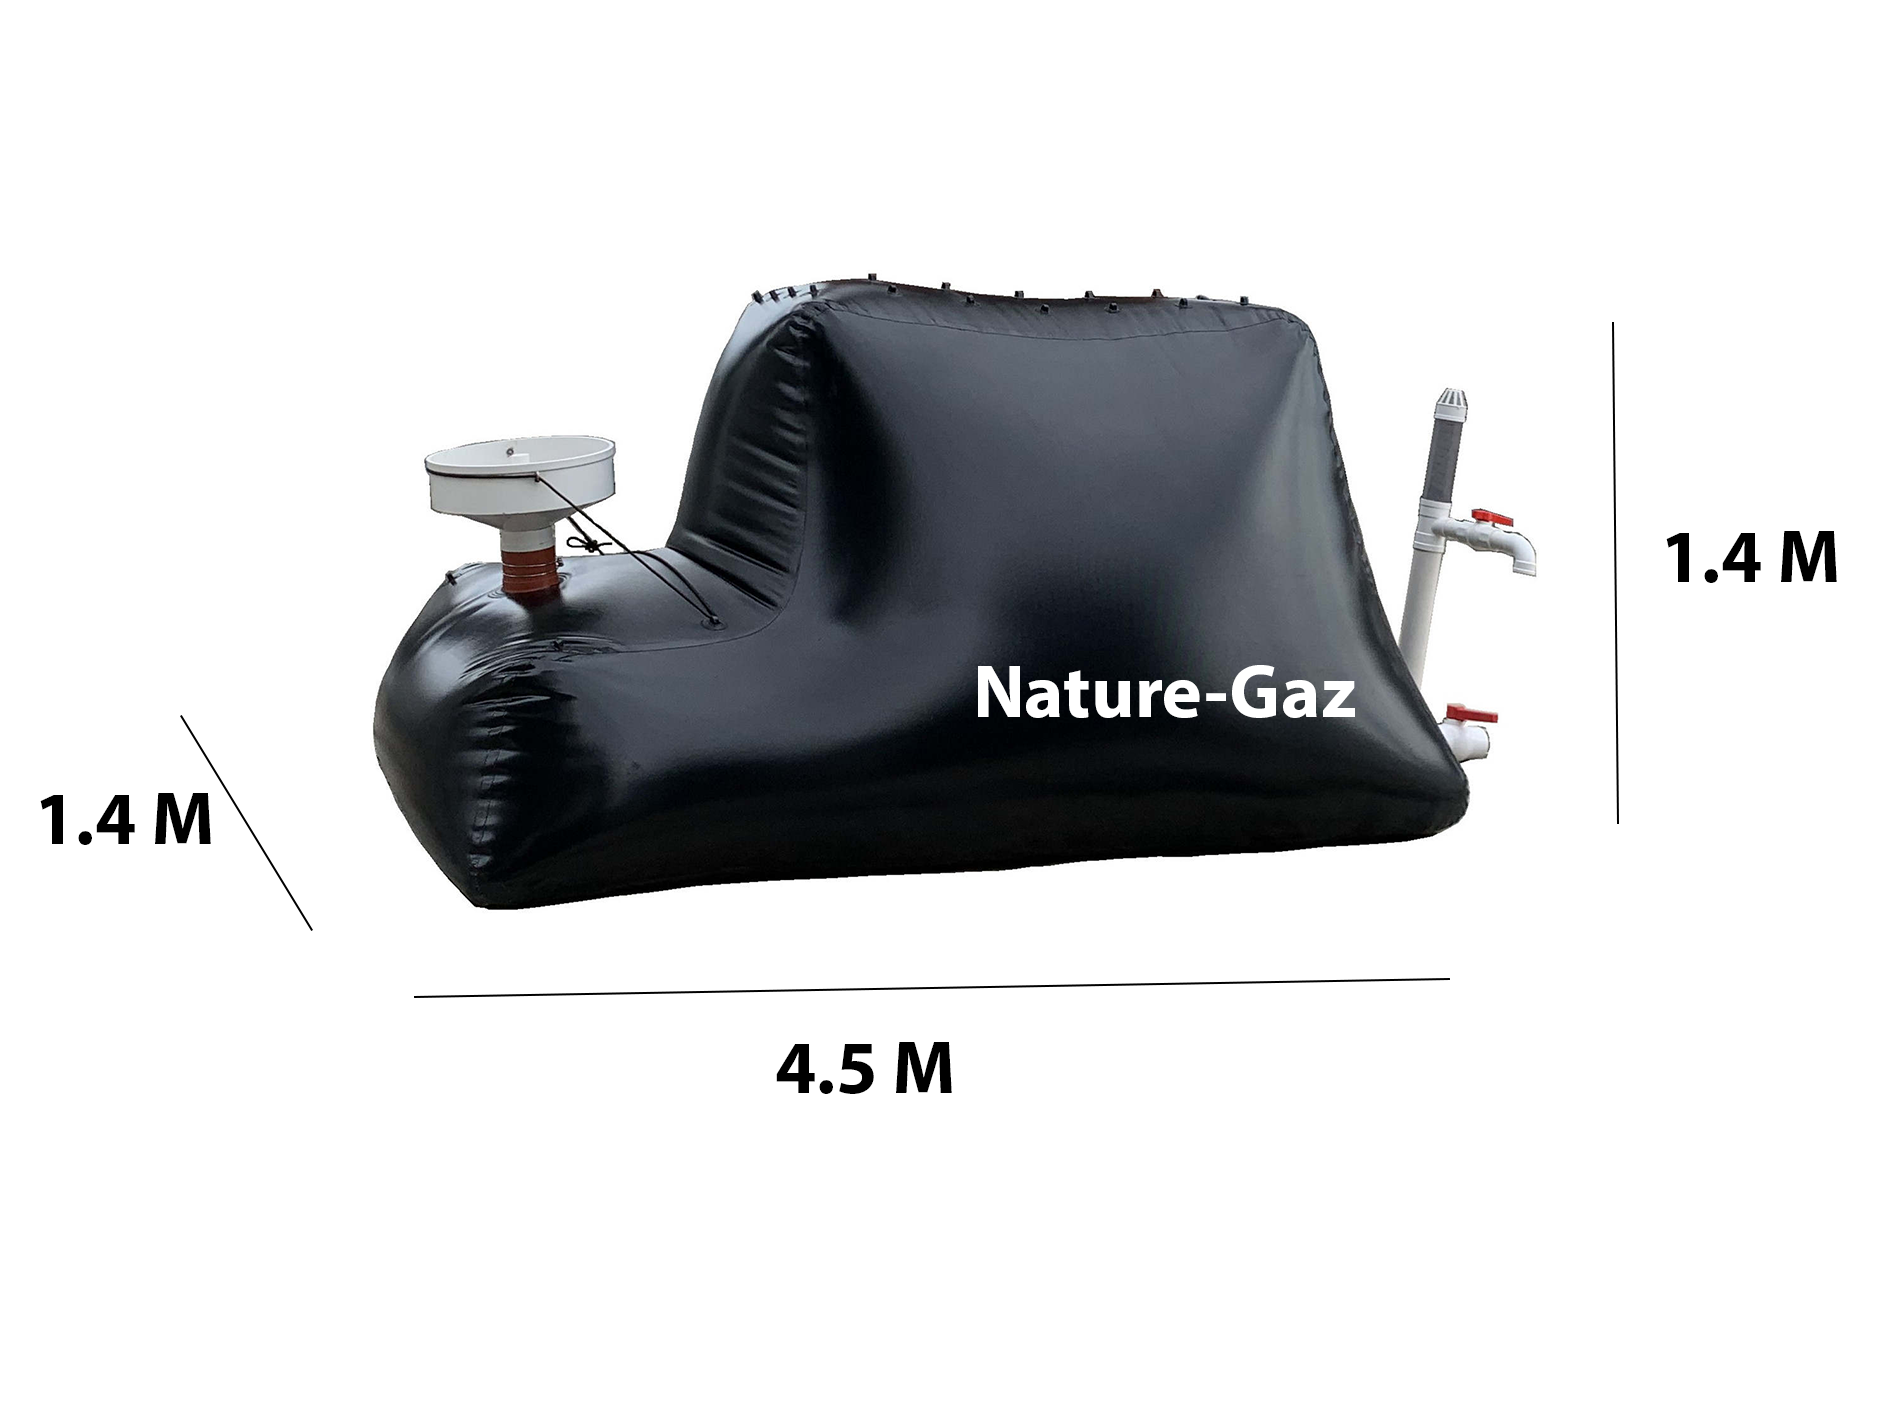 Méthaniseur domestique 8 m3 Nature -gaz avec réchaud, production de biogaz. Biodigesteur